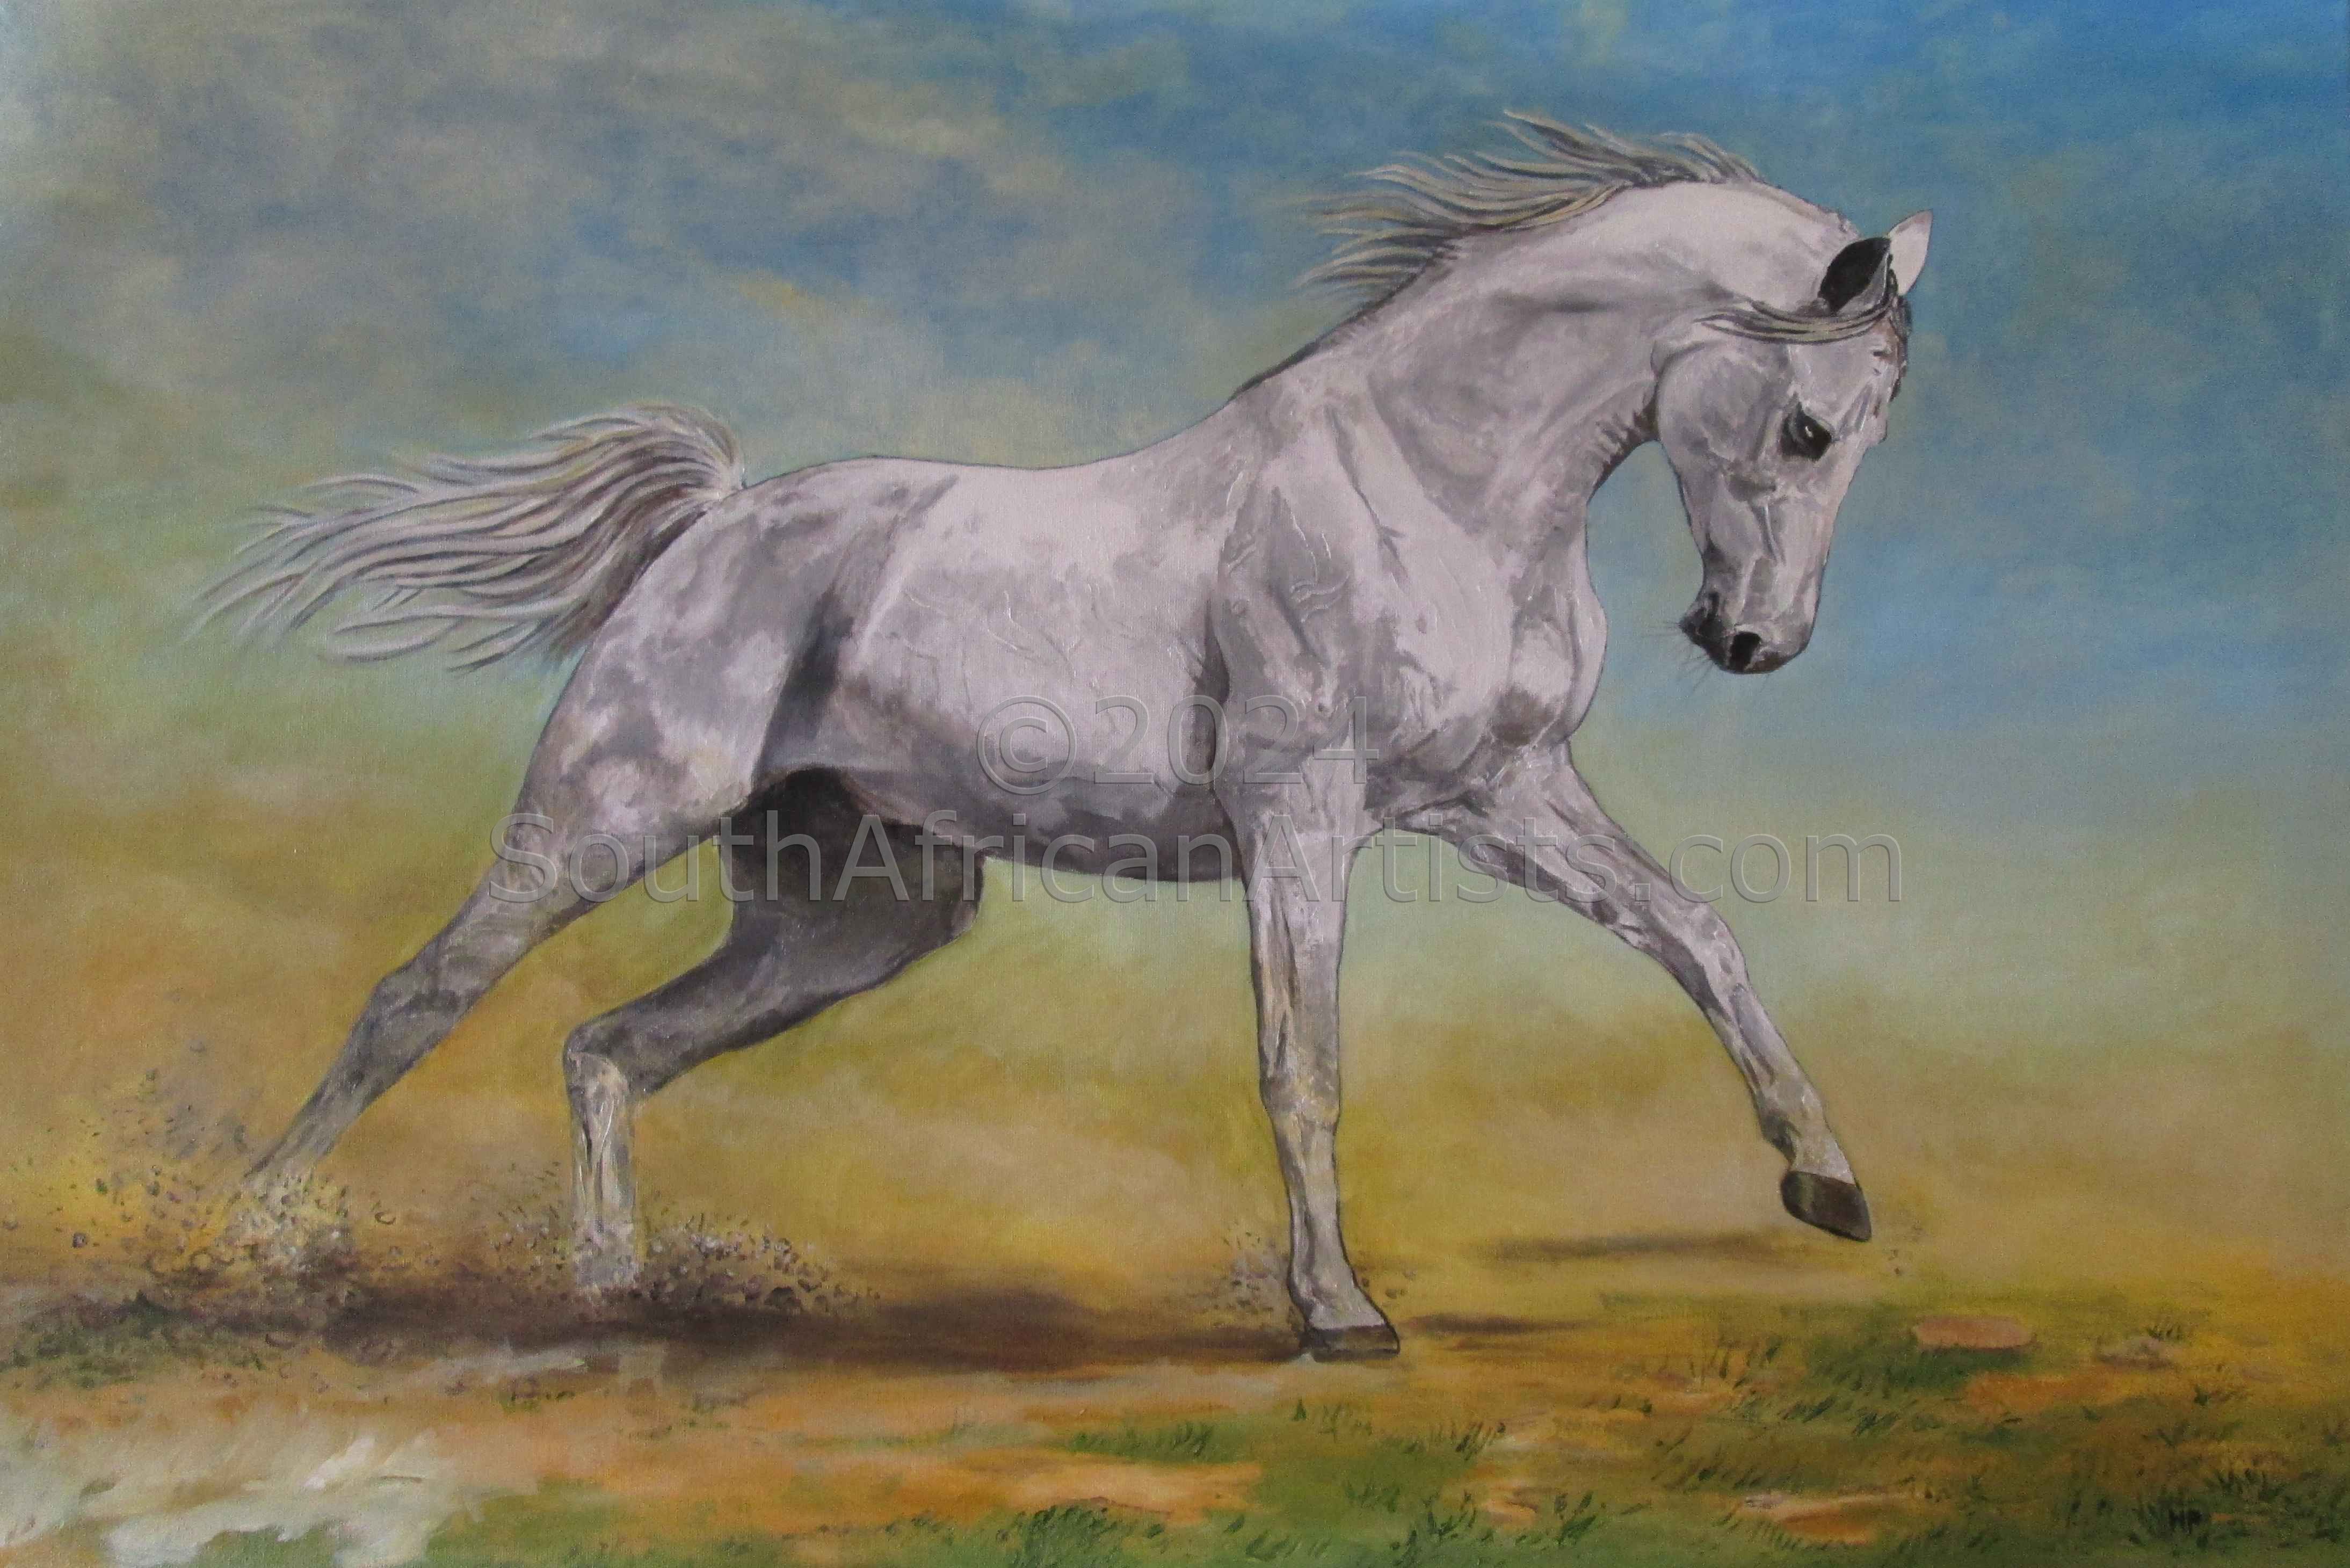 White Horse in the Desert